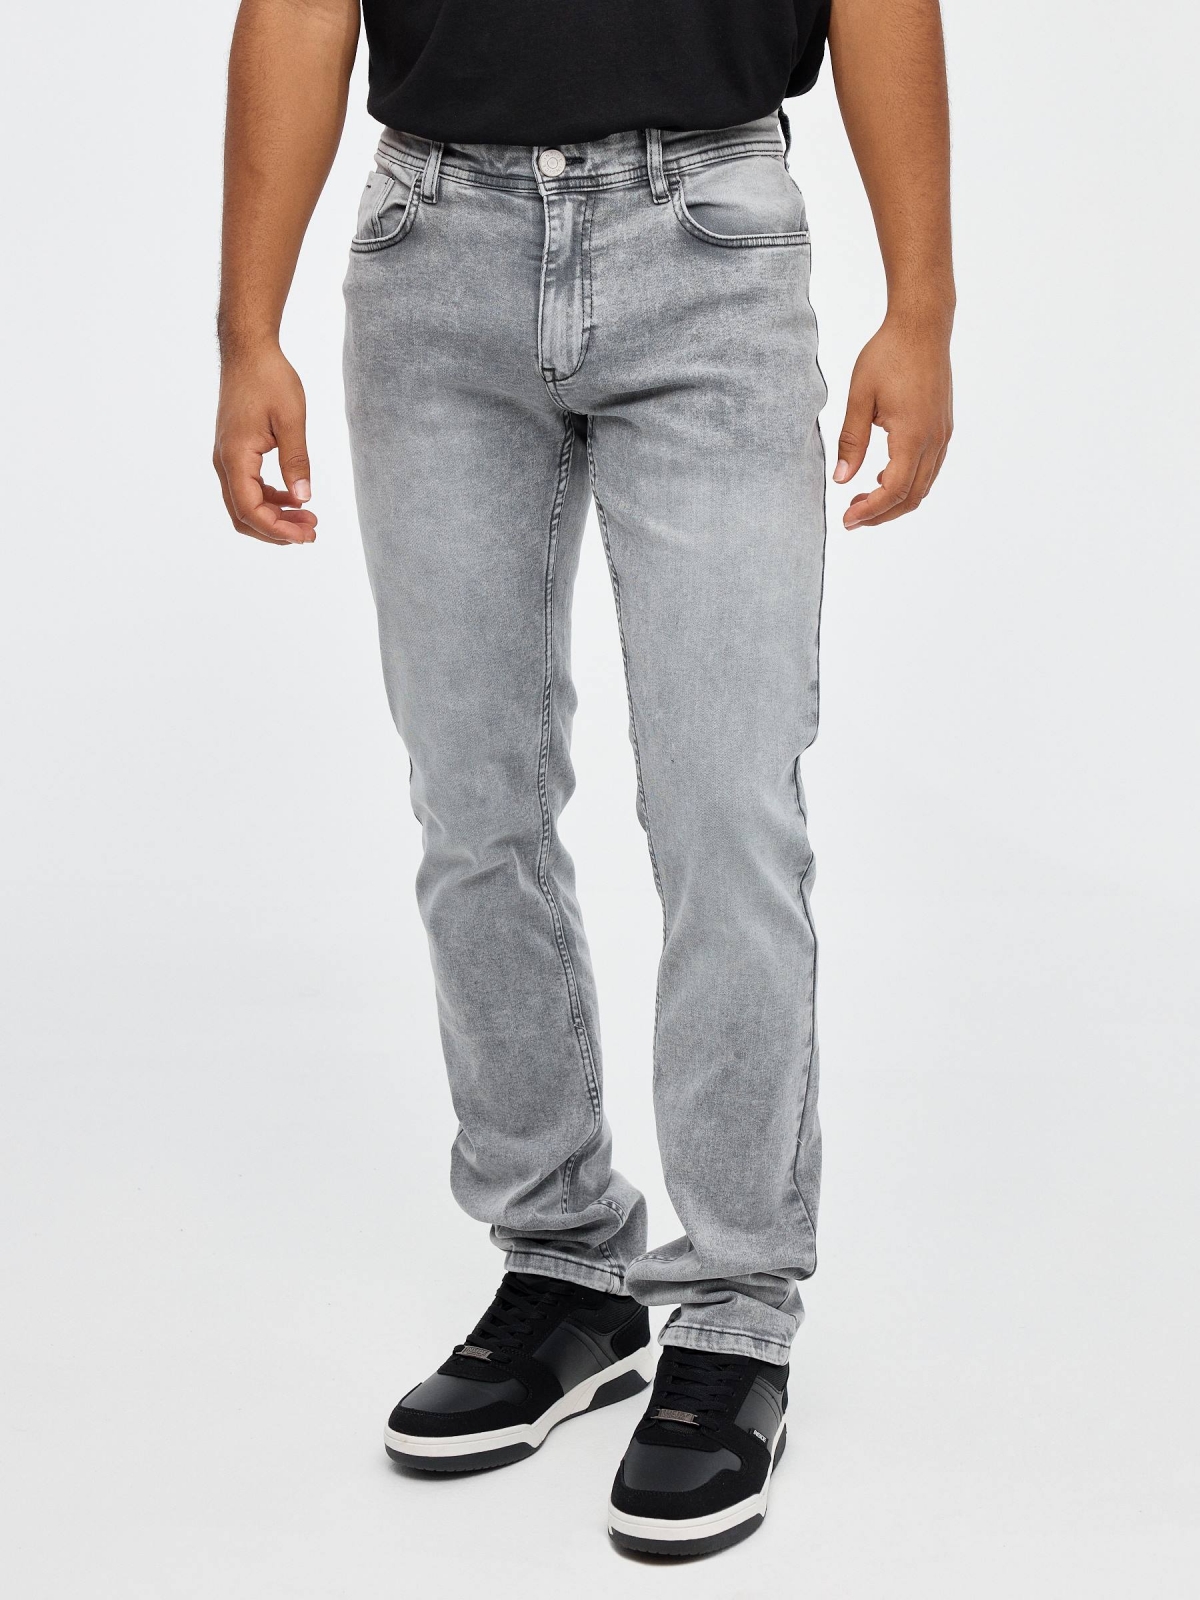 Jeans regular denim gris gris vista media frontal